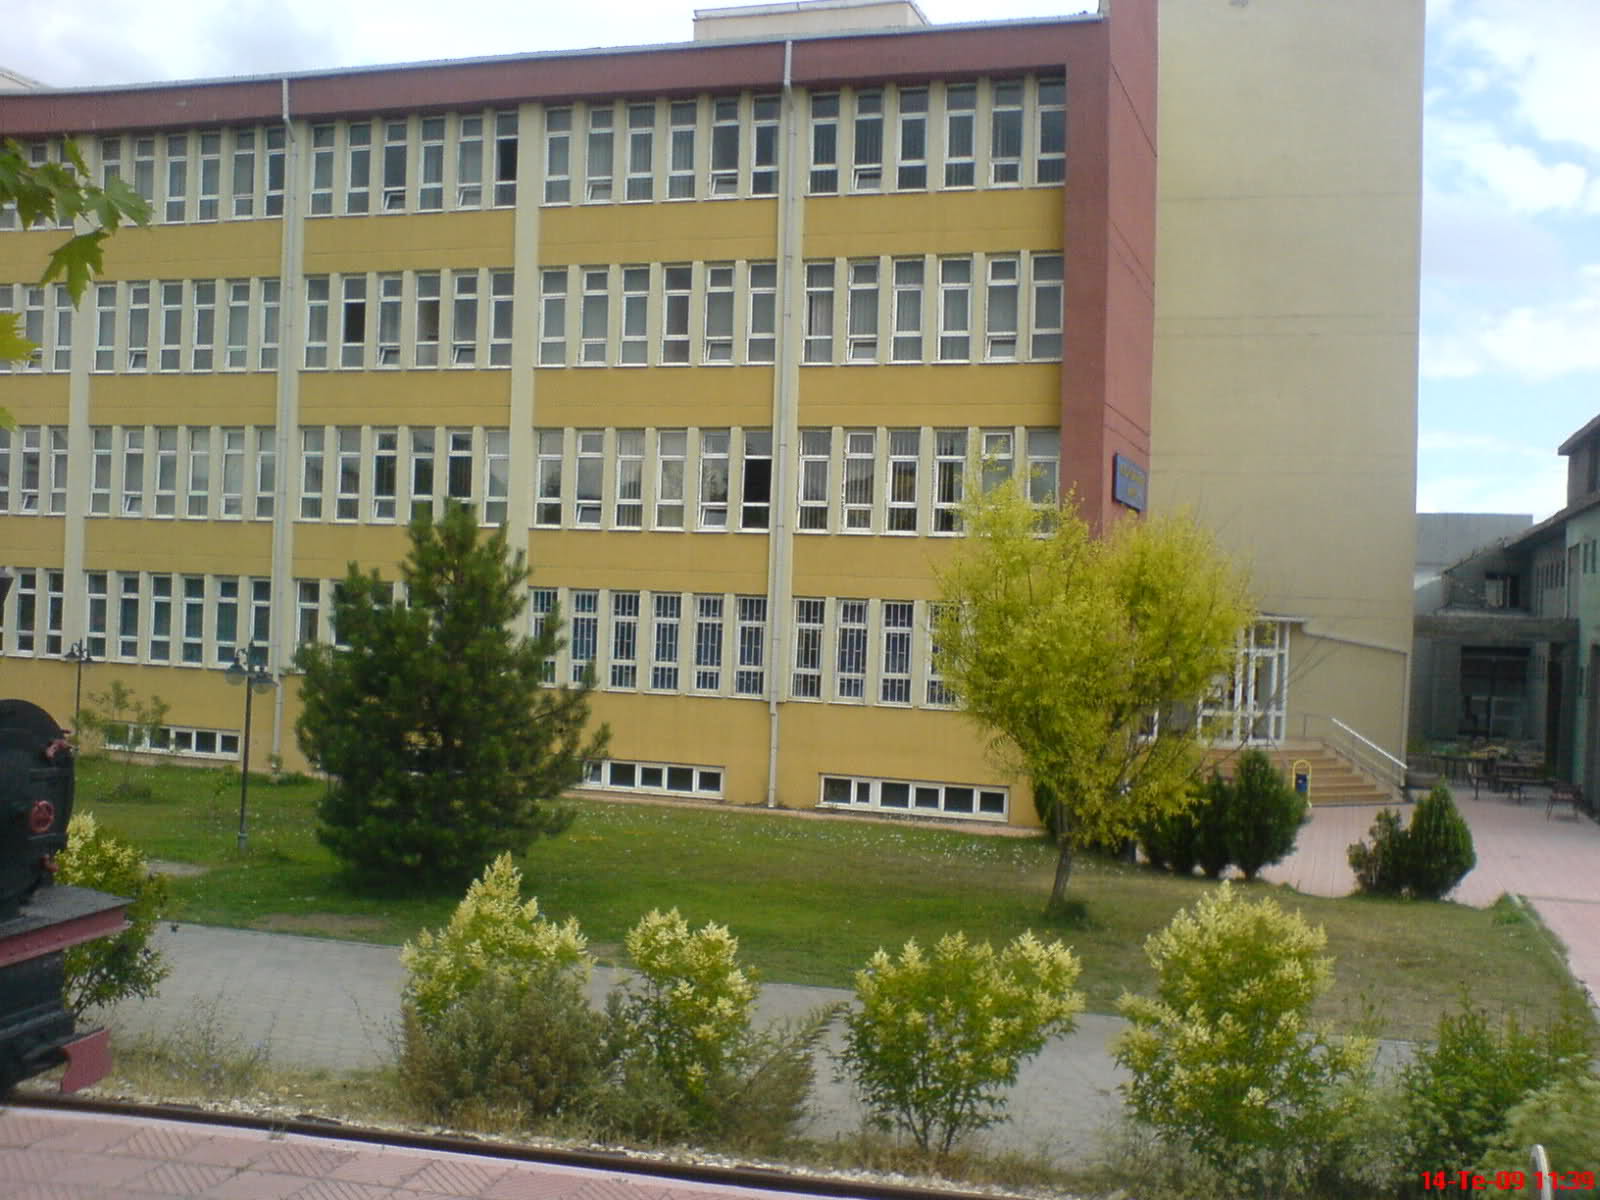  ***Eskişehir Osmangazi Üniversitesi ESOGÜ'lüler (2012'liler BURAYA)***